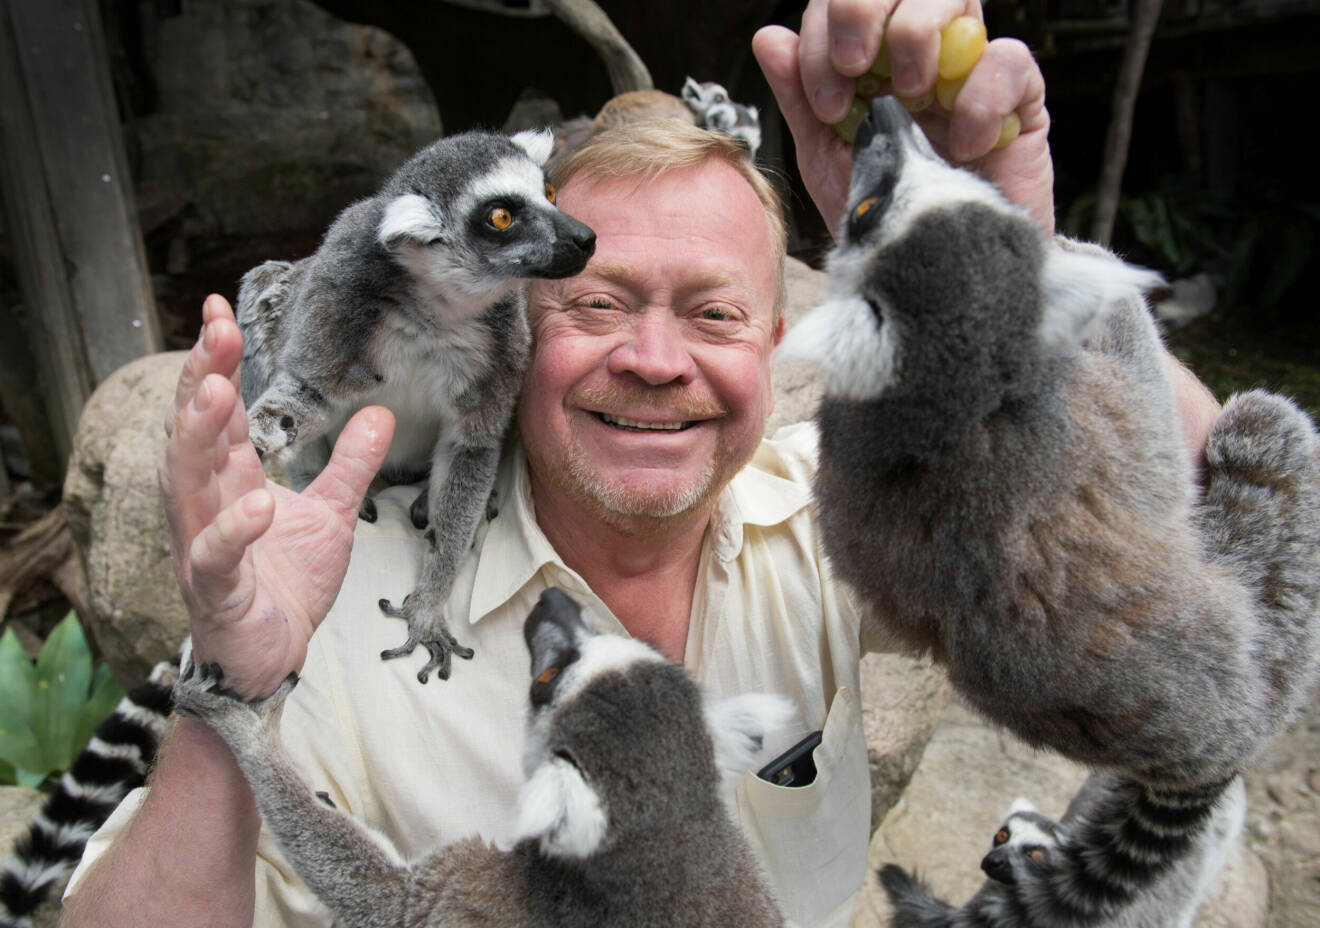 Skanskenakvariets grundare och chef Jonas Wahlström tillsammans med lemurerna.